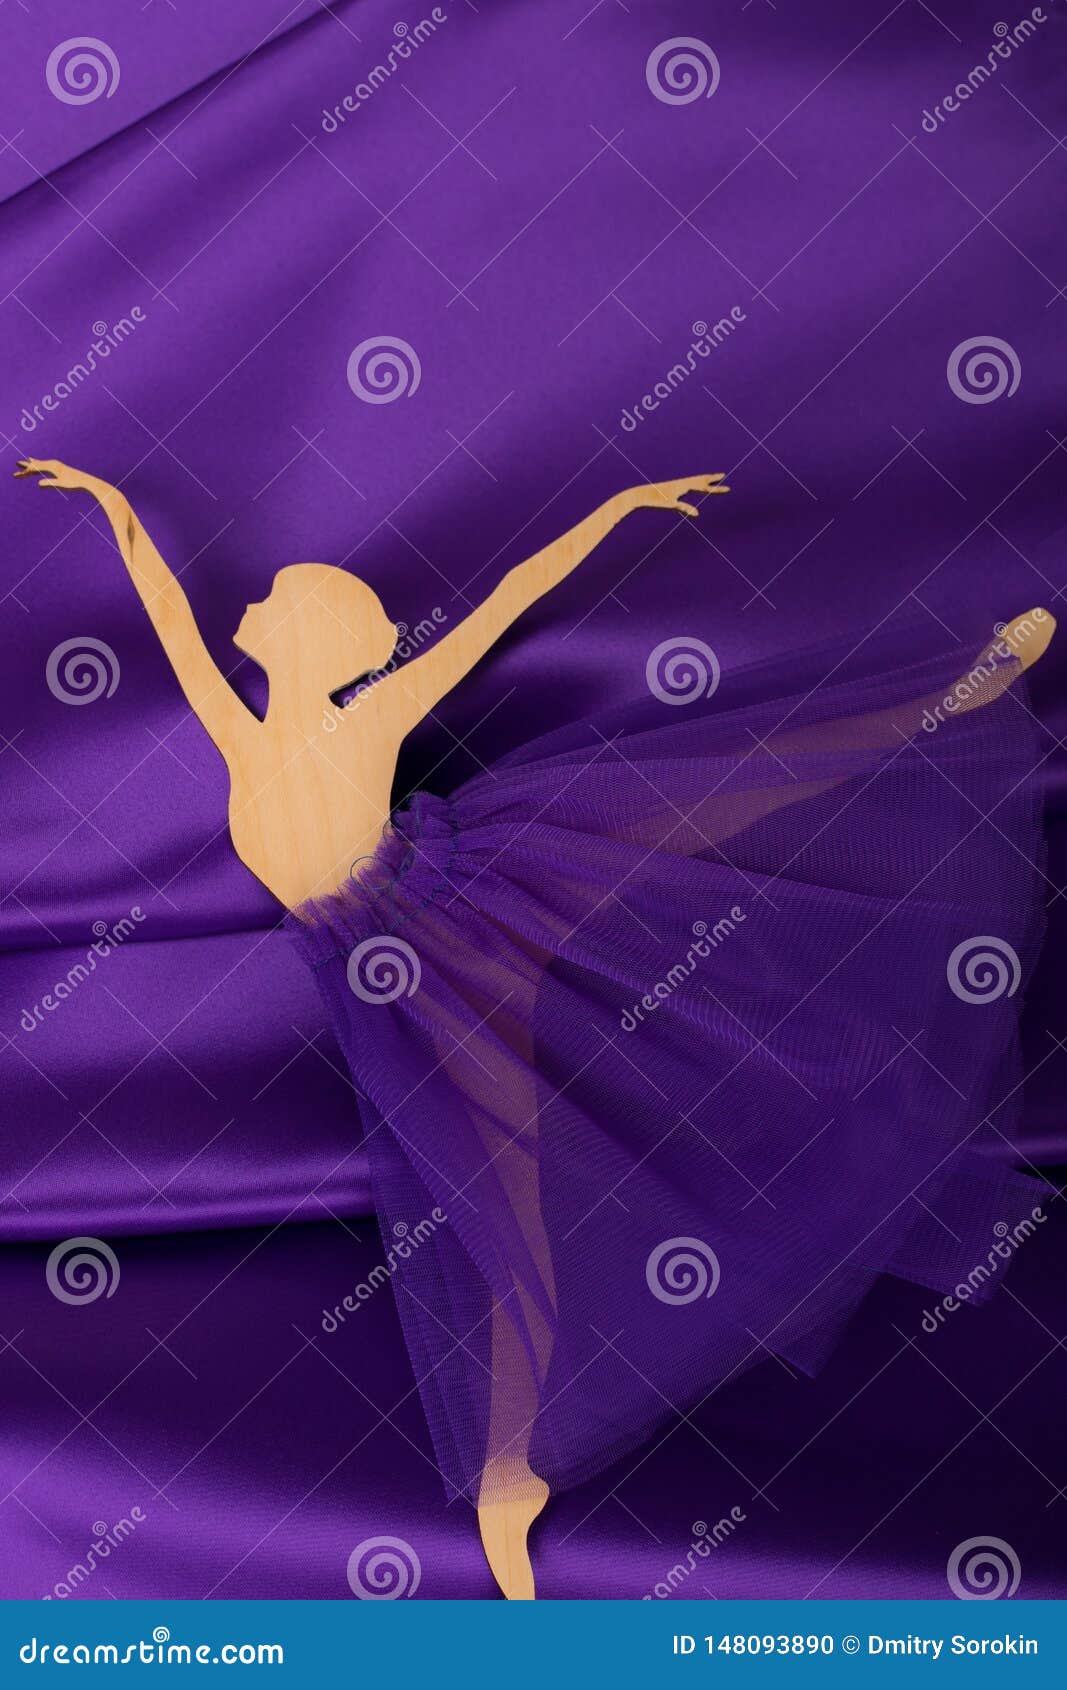 plywood ballerina figurine on purple fabric